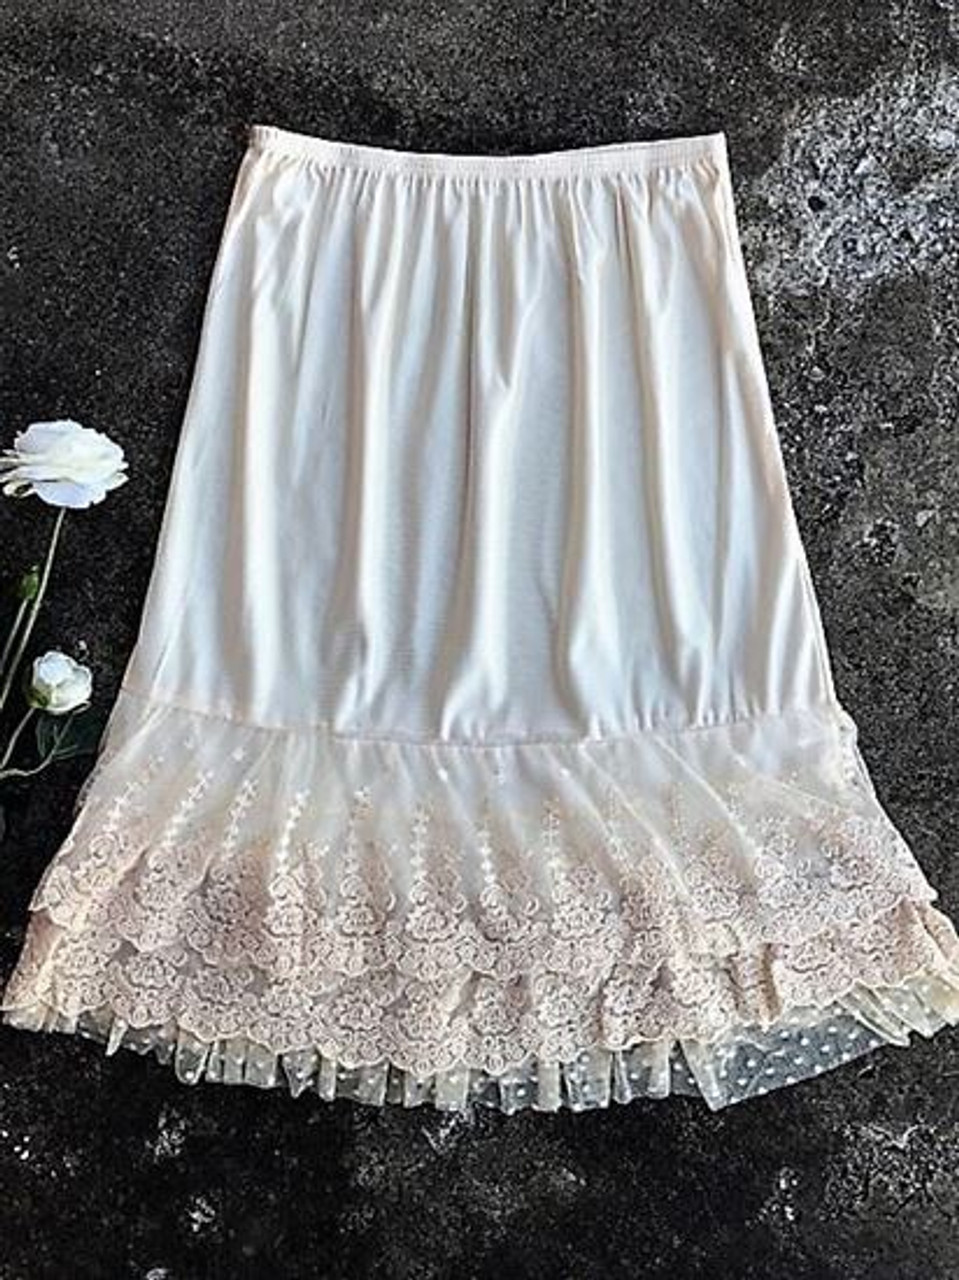 Skirt Slip Extender Lace Dot Mesh Ivory - The Klassy Girl Boutique